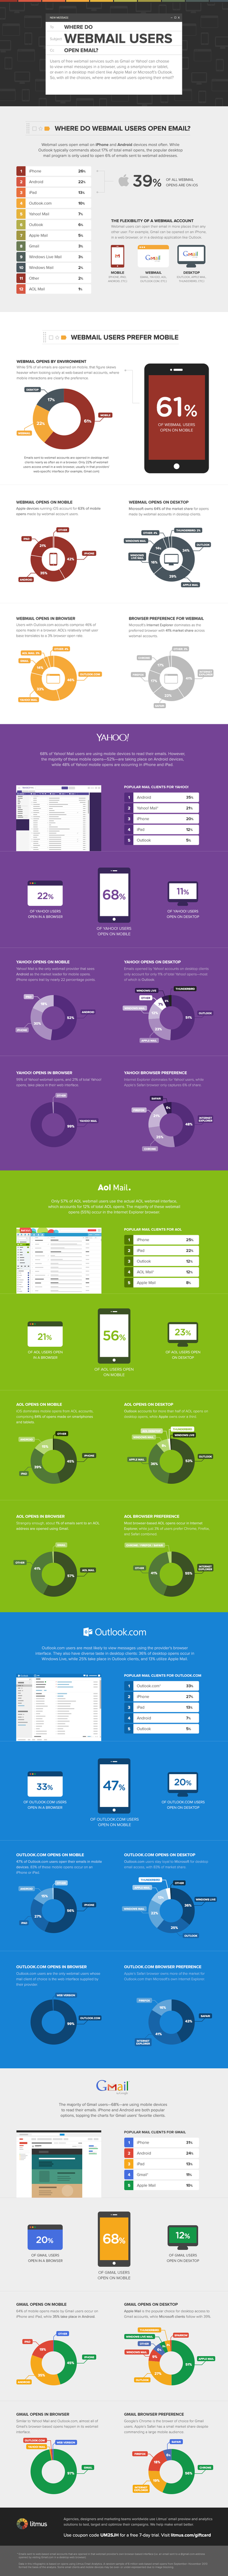 Webmail et mobile #infographie